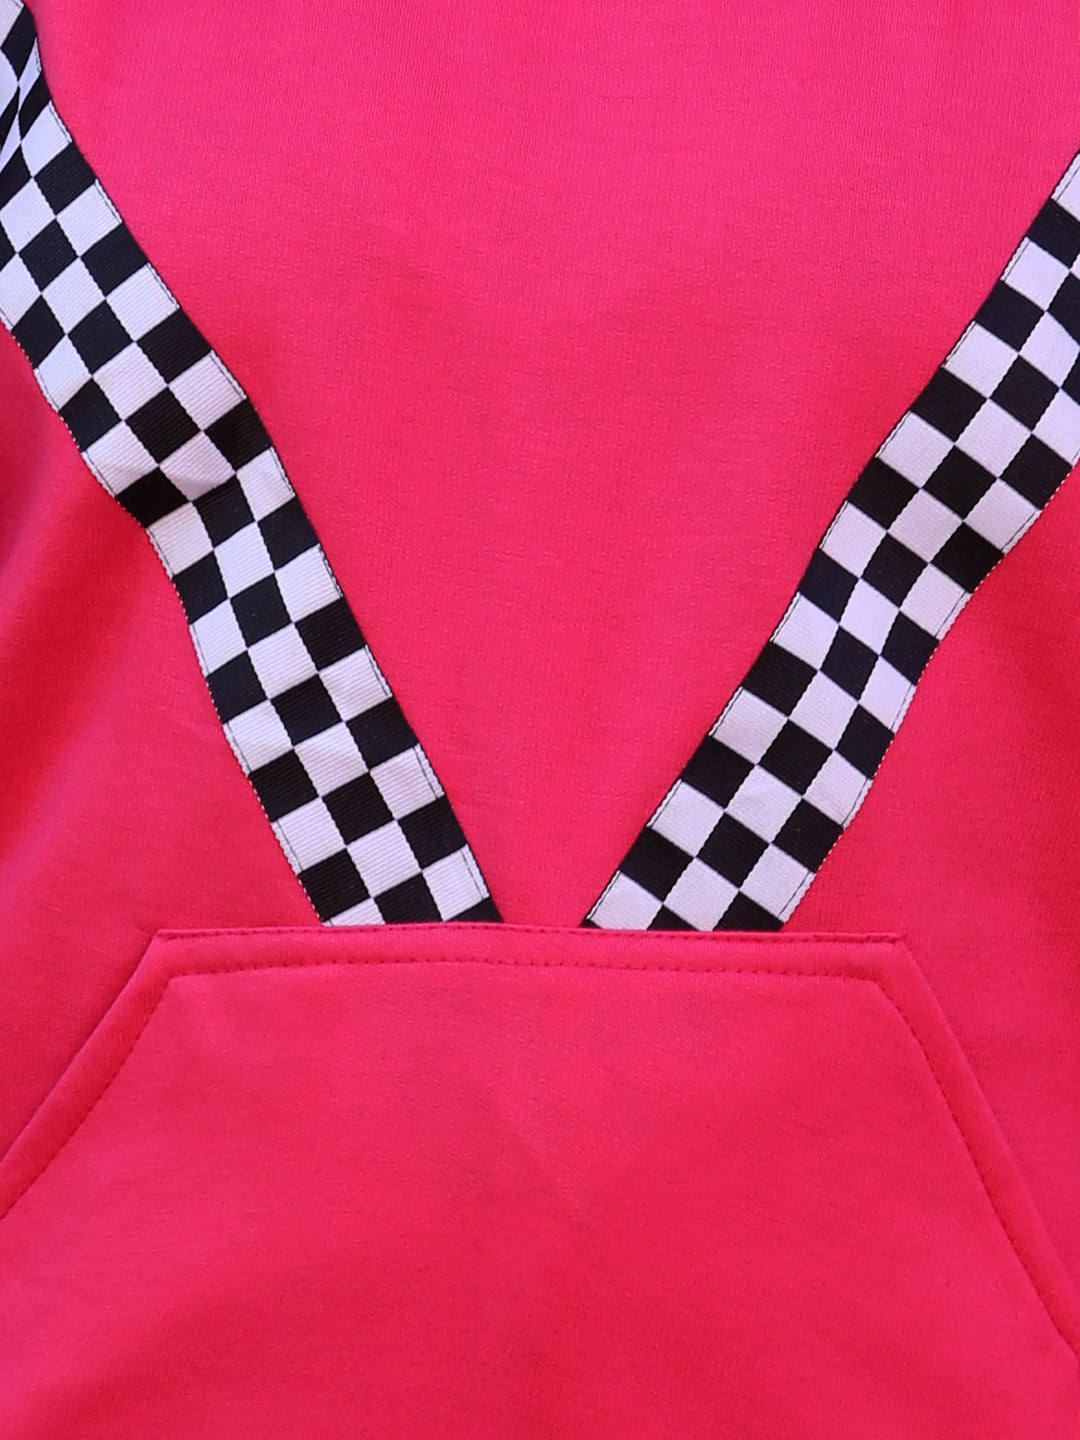 Cutiekins Solid Round Neck Lace insert Sweatshirt -Margenta Pink & Black